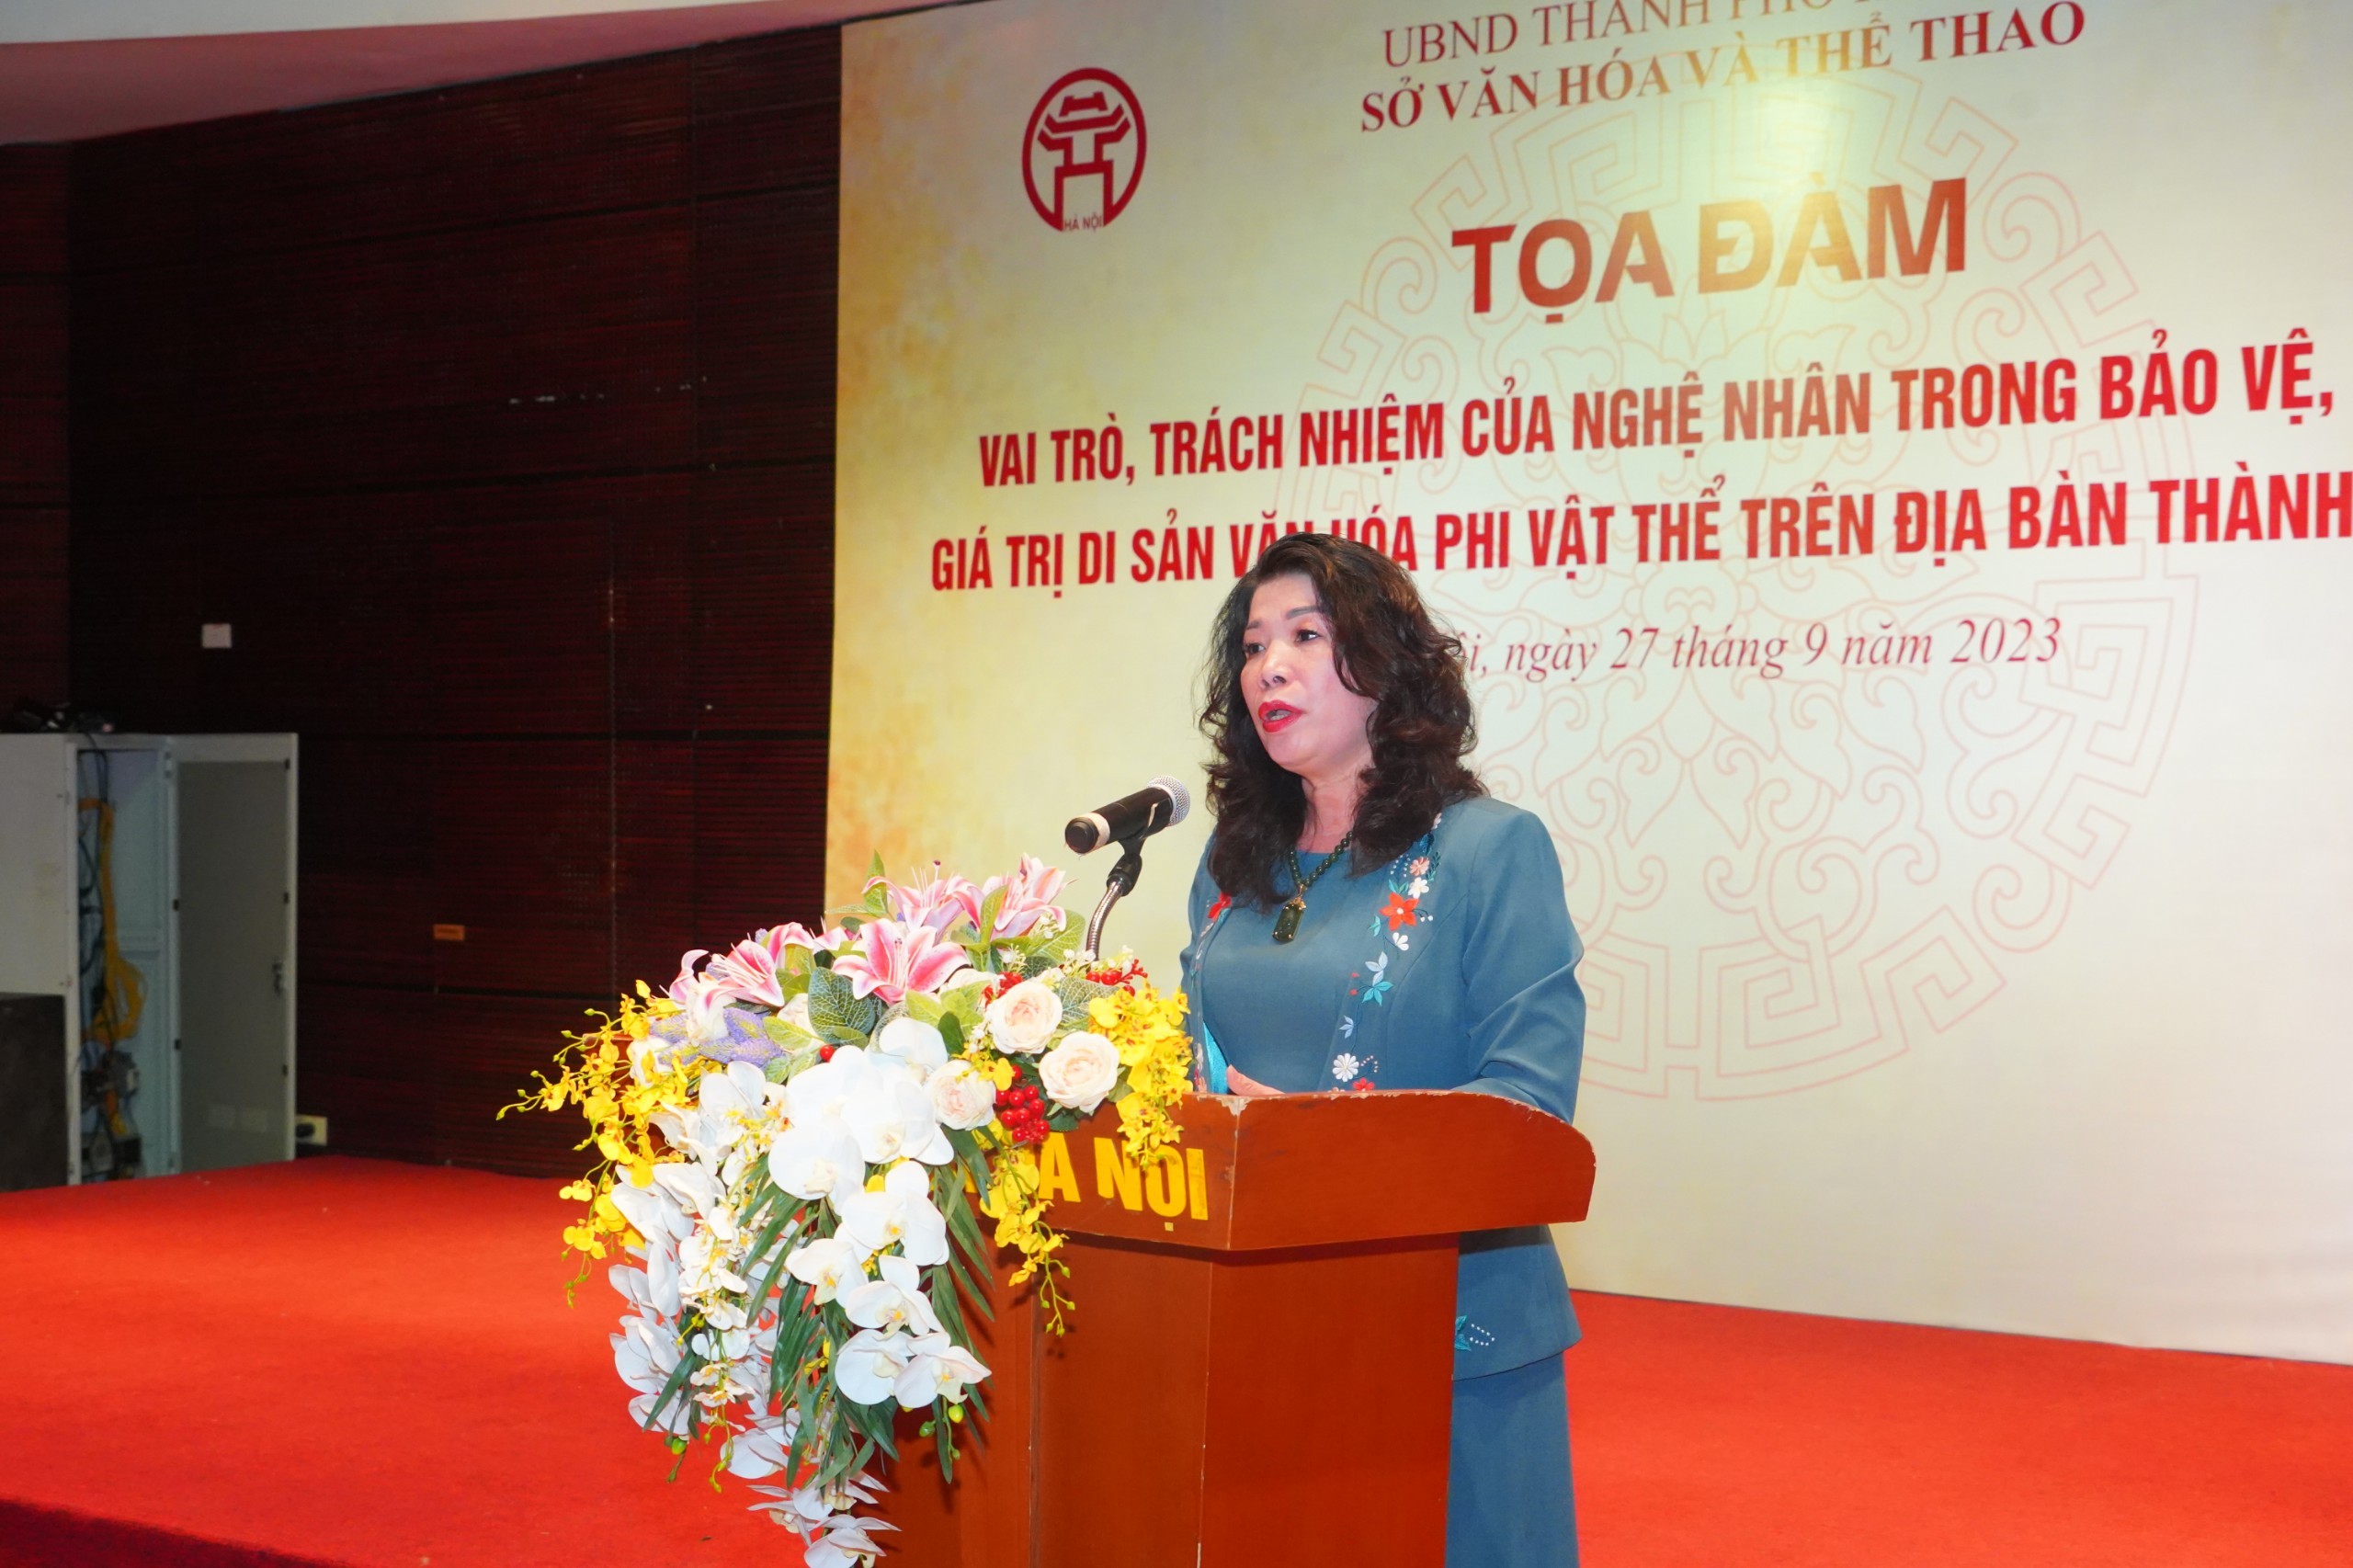 Phó Giám đốc Sở Văn hóa và Thể thao thành phố Hà Nội Trần Thị Vân Anh phát biểu tại Tọa đàm.